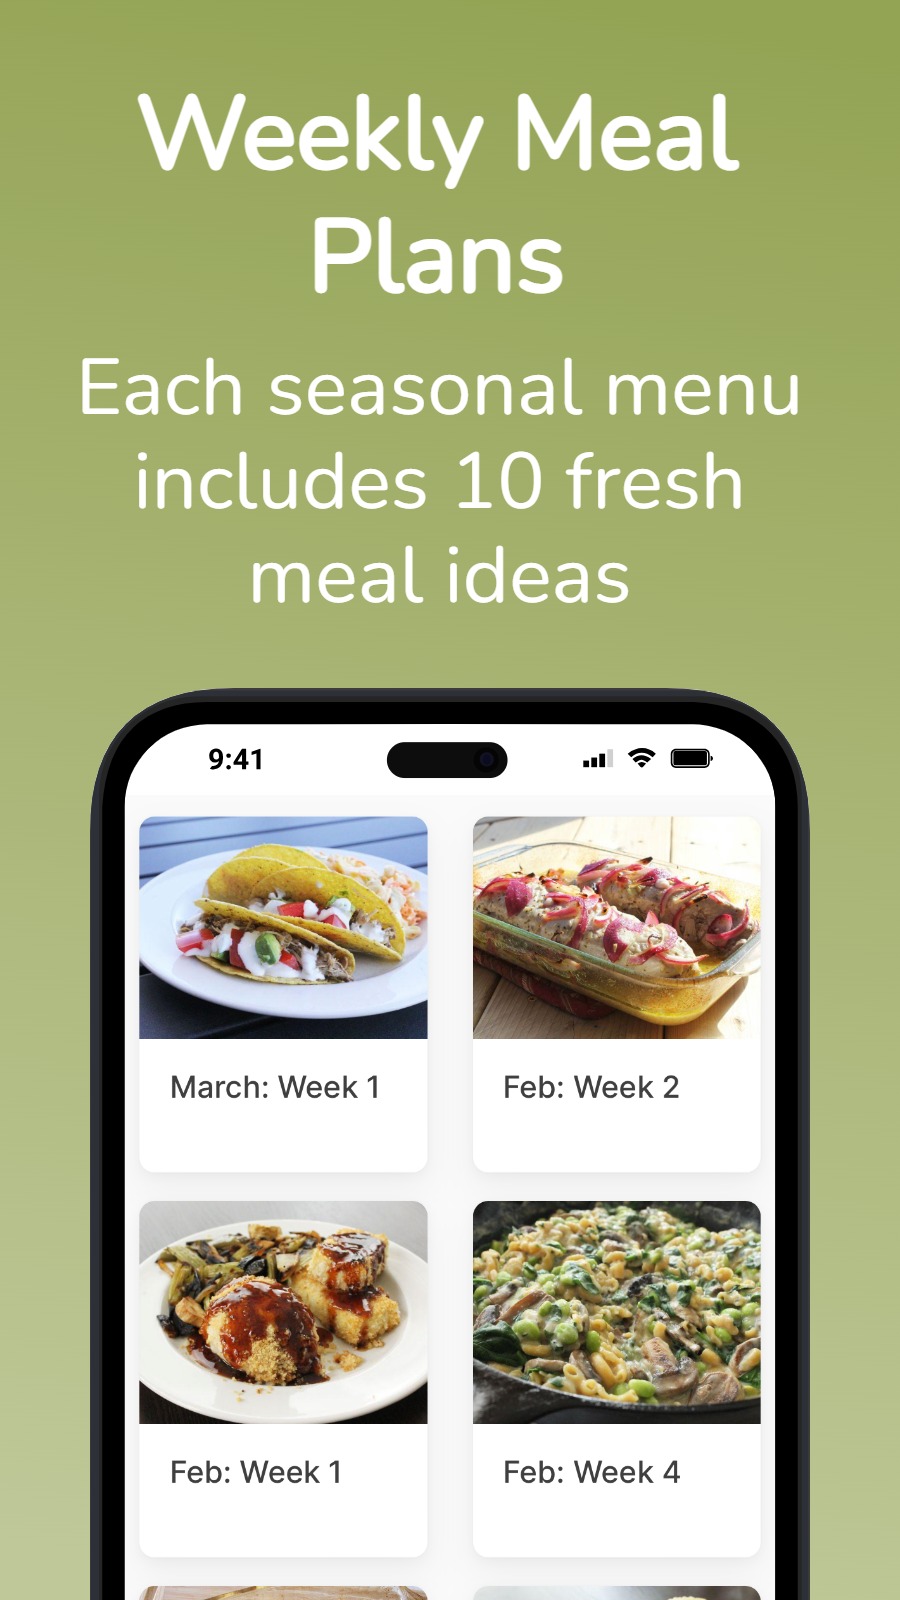 Weekly Meal Plans - Each seasonal menu includes 10 fresh meal ideas